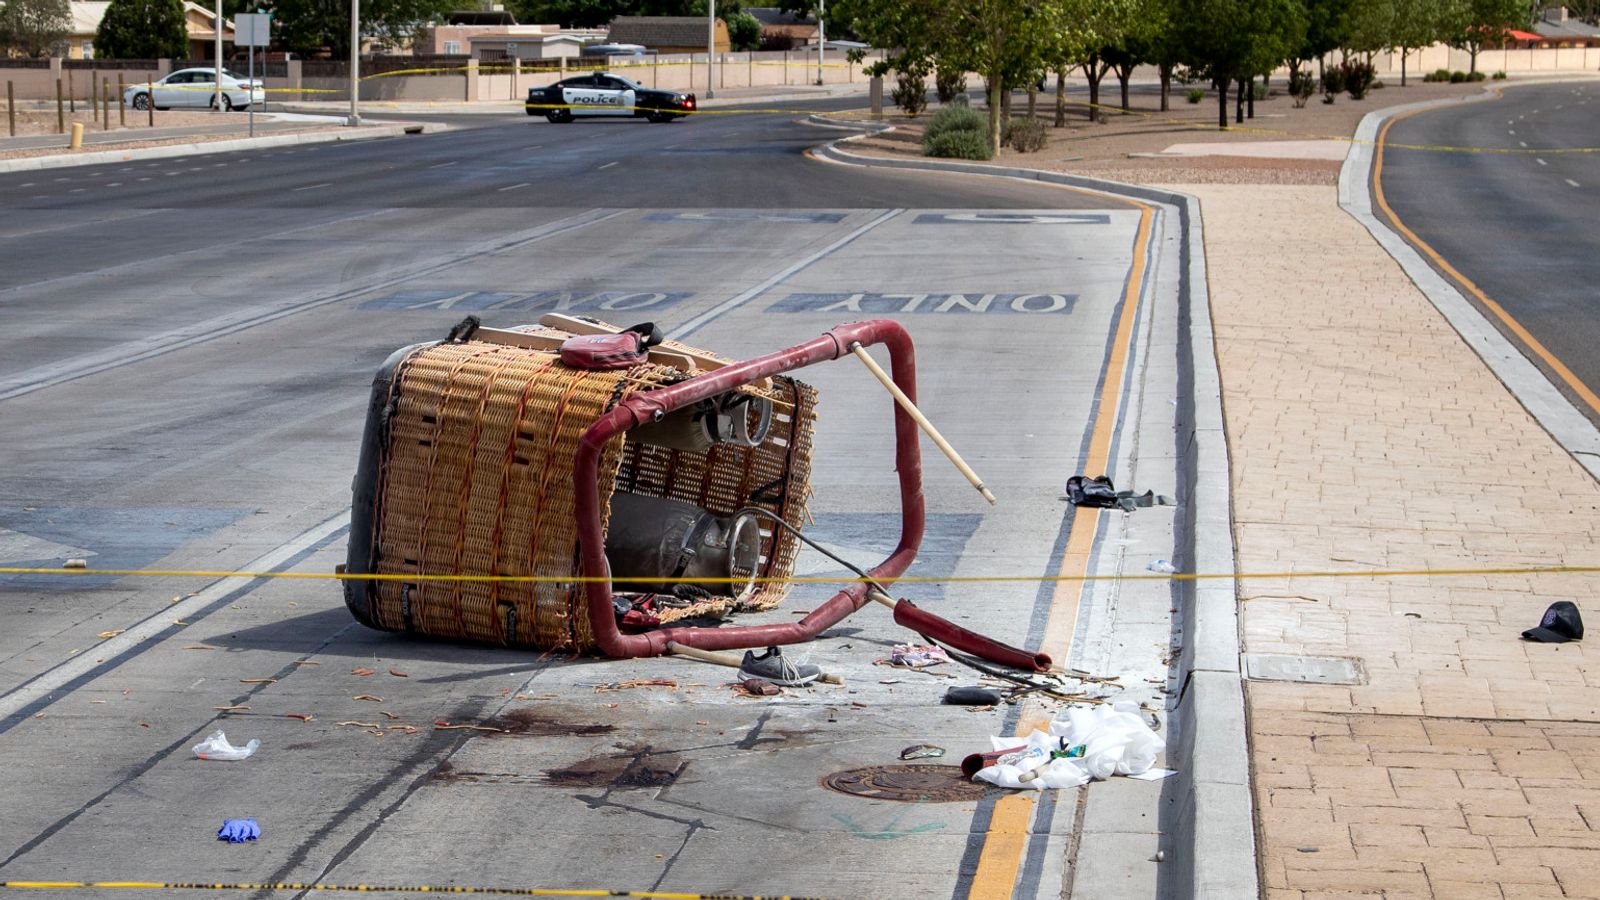 Stati Uniti: Cinque morti dopo l’esplosione di una mongolfiera sulle linee elettriche di Albuquerque, New Mexico |  Notizie dagli Stati Uniti